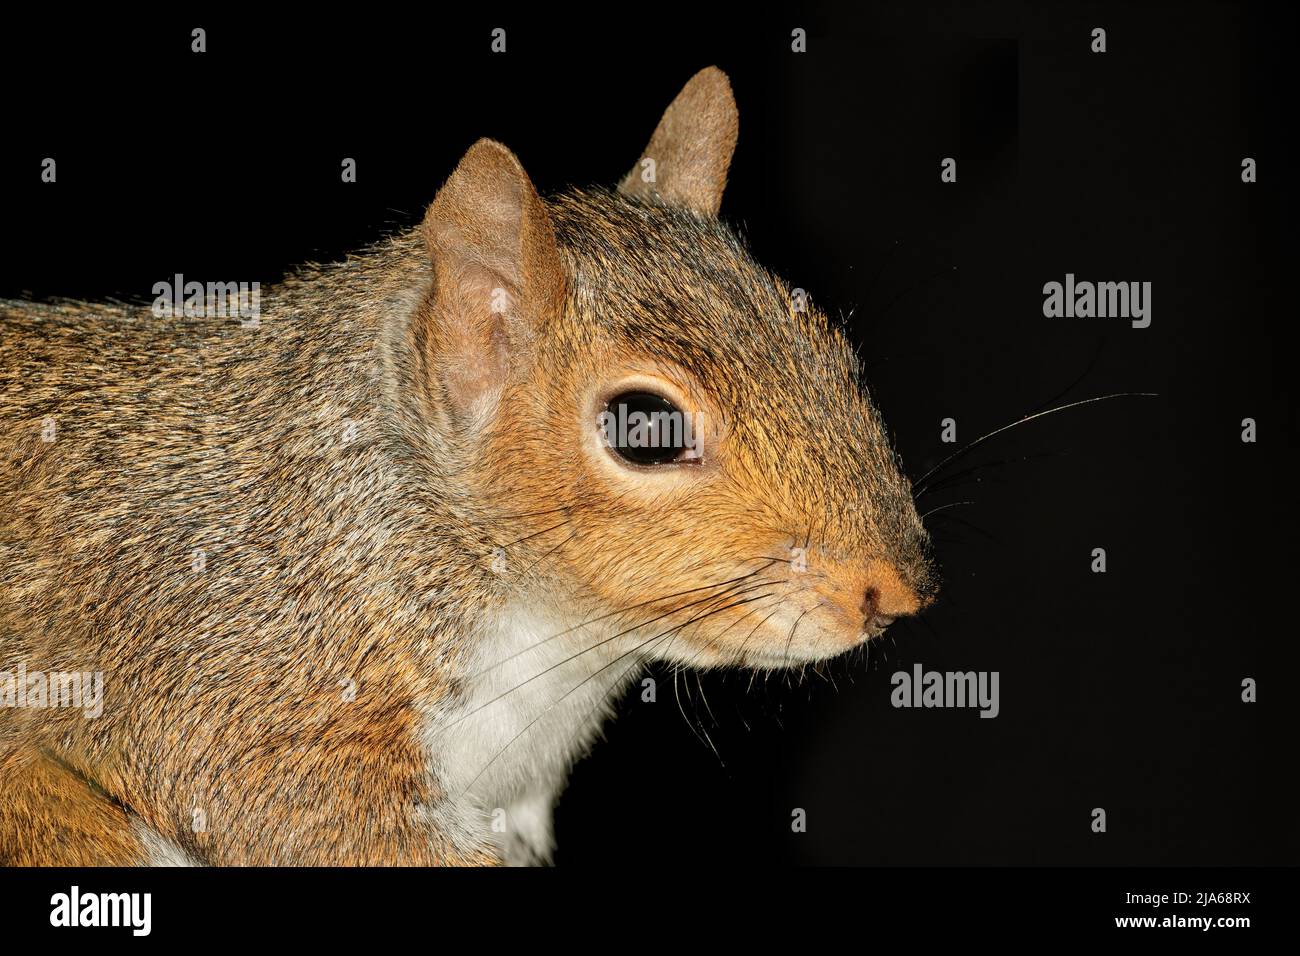 Portrait d'un écureuil gris ou l'écureuil gris (Sciurus carolinensis) sur noir Banque D'Images